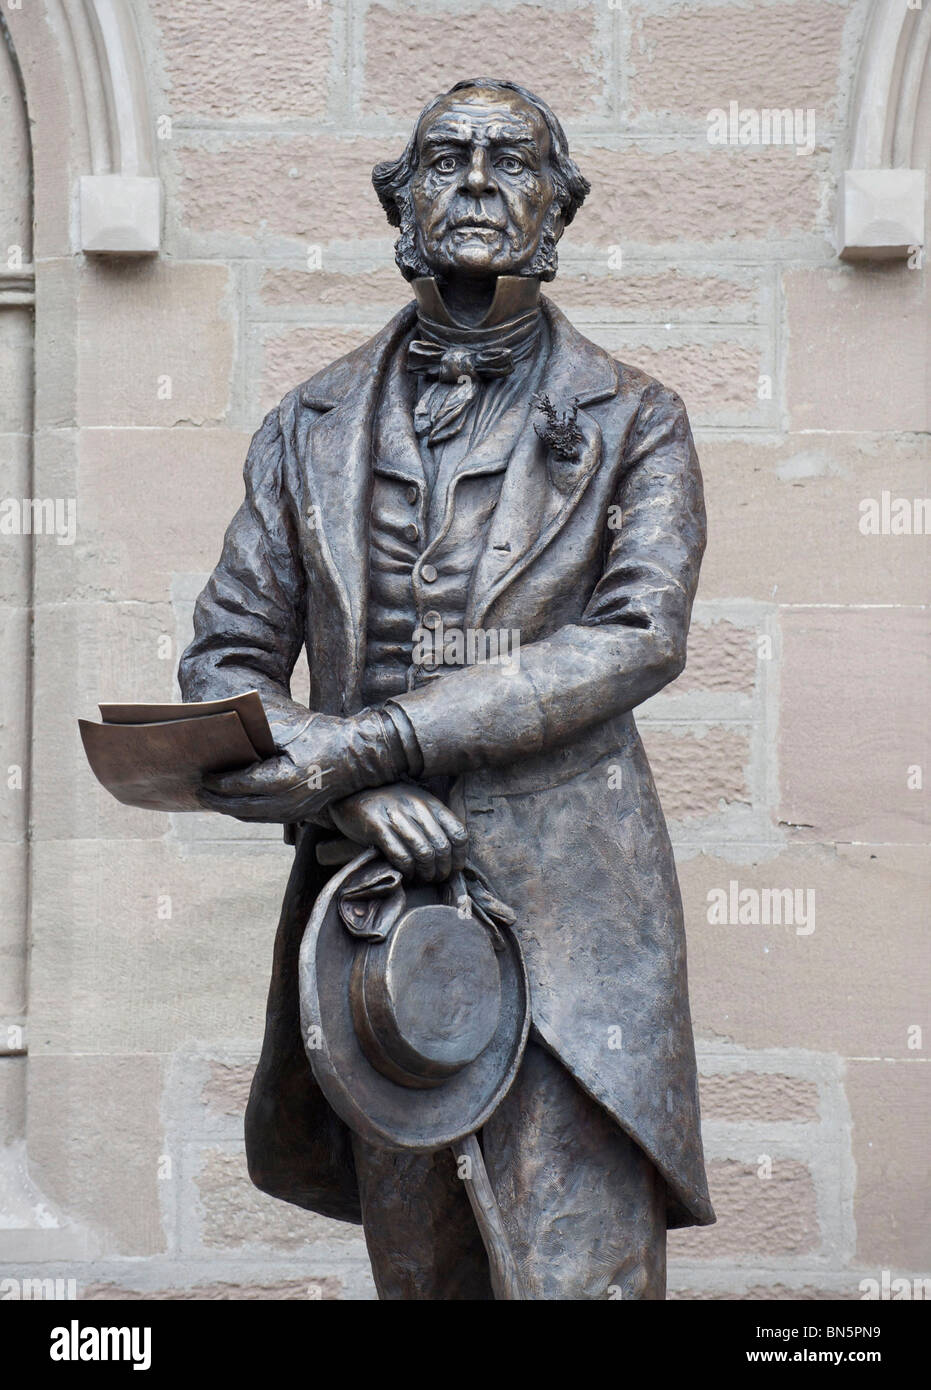 Estatua de bronce del primer ministro victoriano y "Grand Old Man" de la política de William Ewart Gladstone por el artista Jemma Pearson. Foto de stock